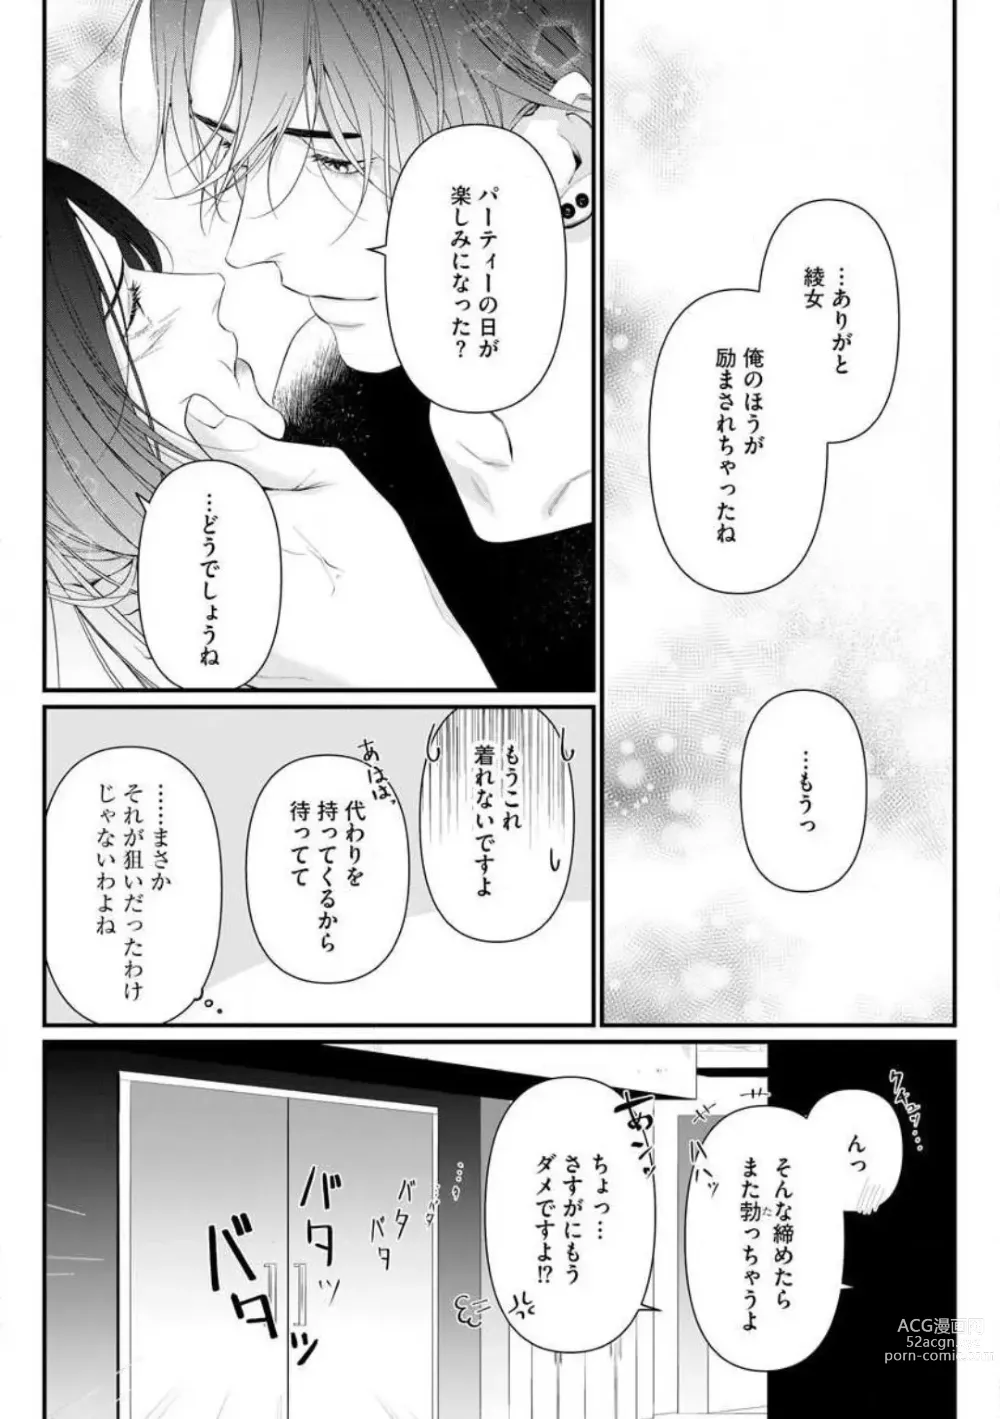 Page 190 of manga Risei o Sutete, Shoukei o Daku 1-6